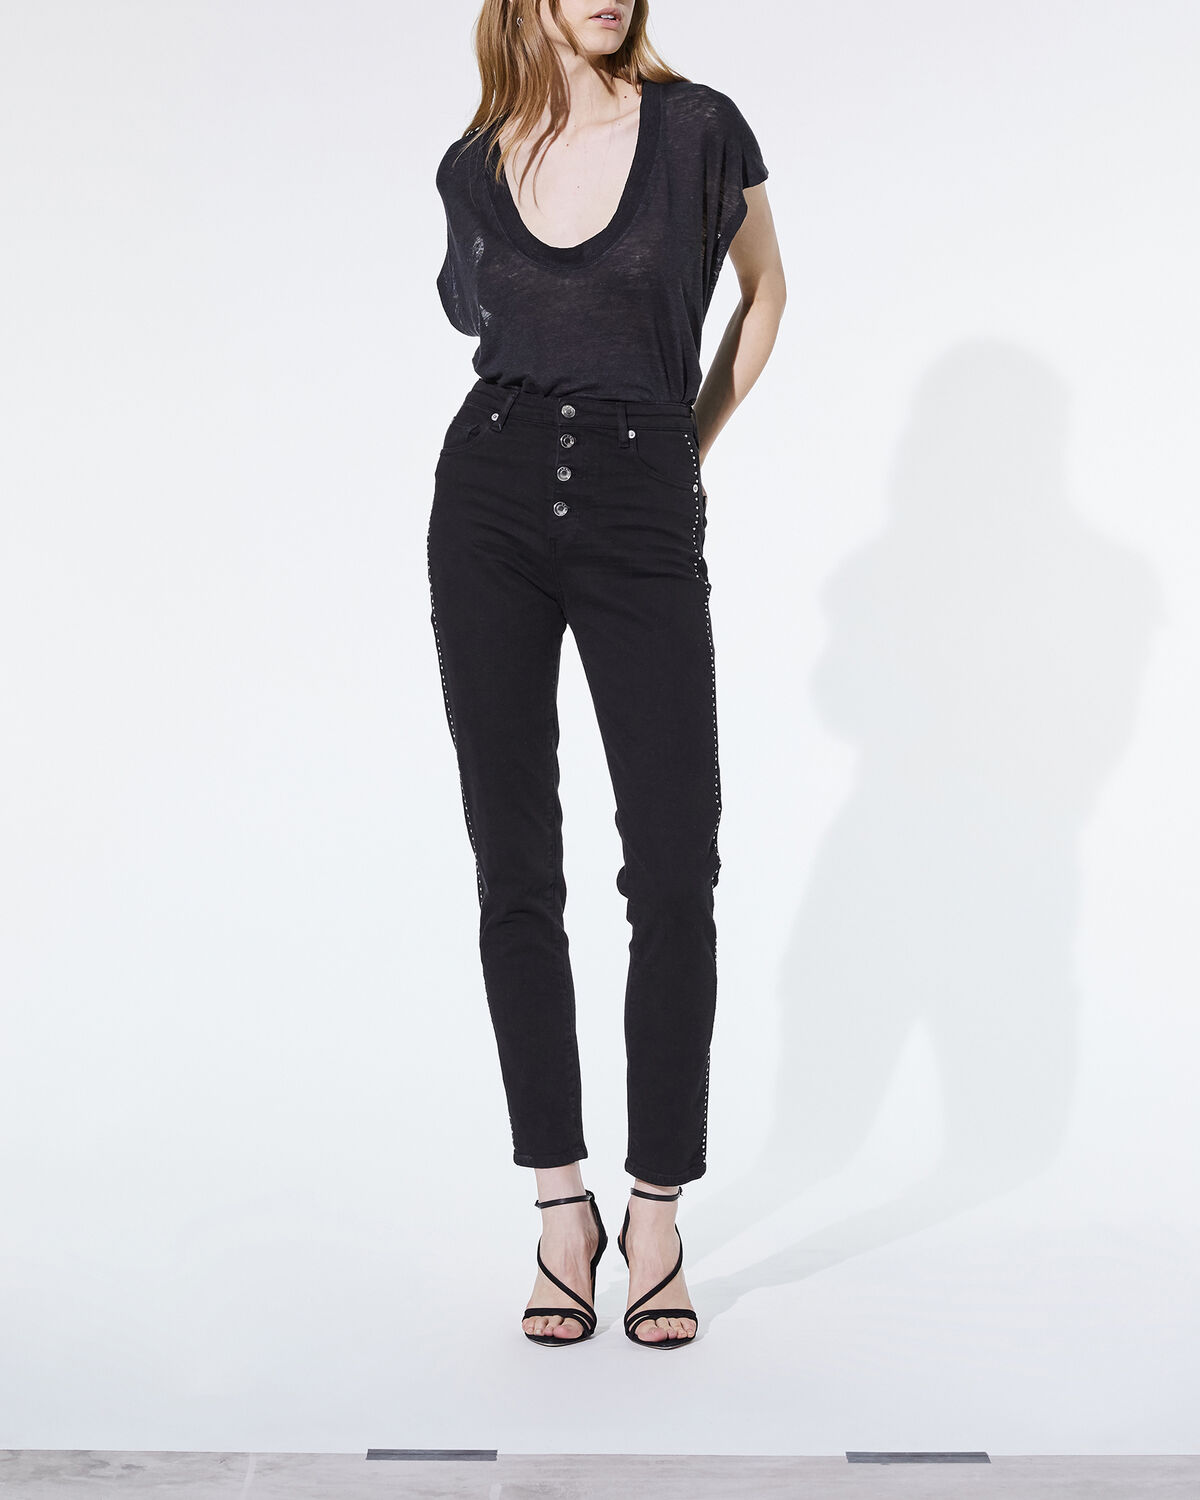 Gaetus Jeans Black by IRO Paris